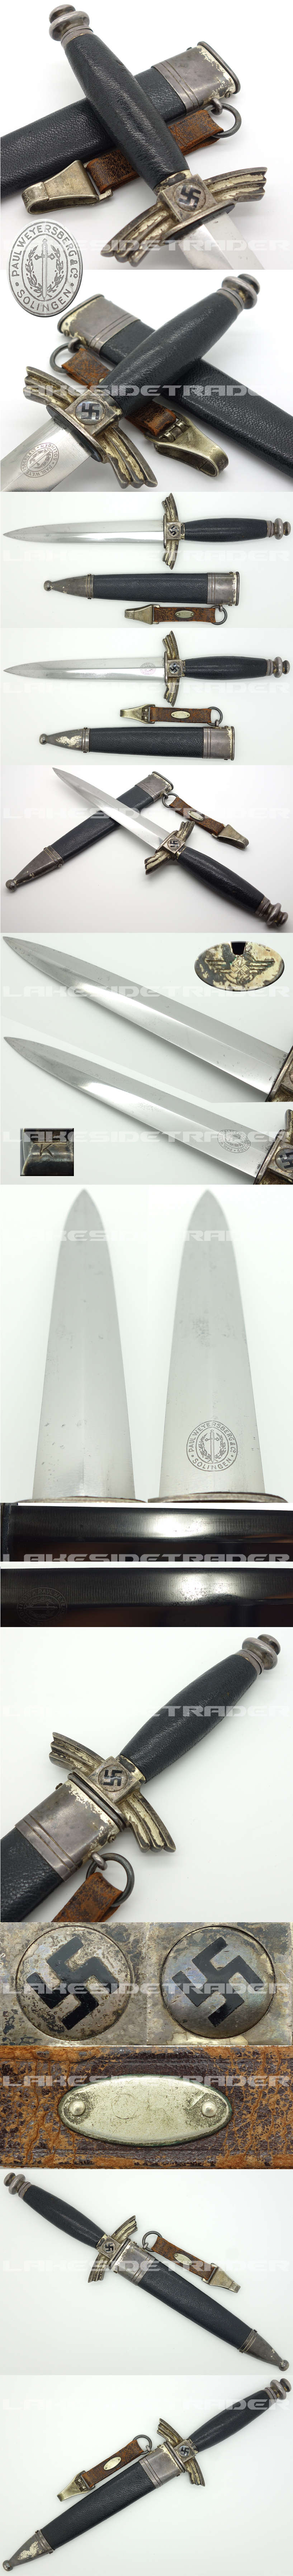 DLV Knife by Paul Weyersberg